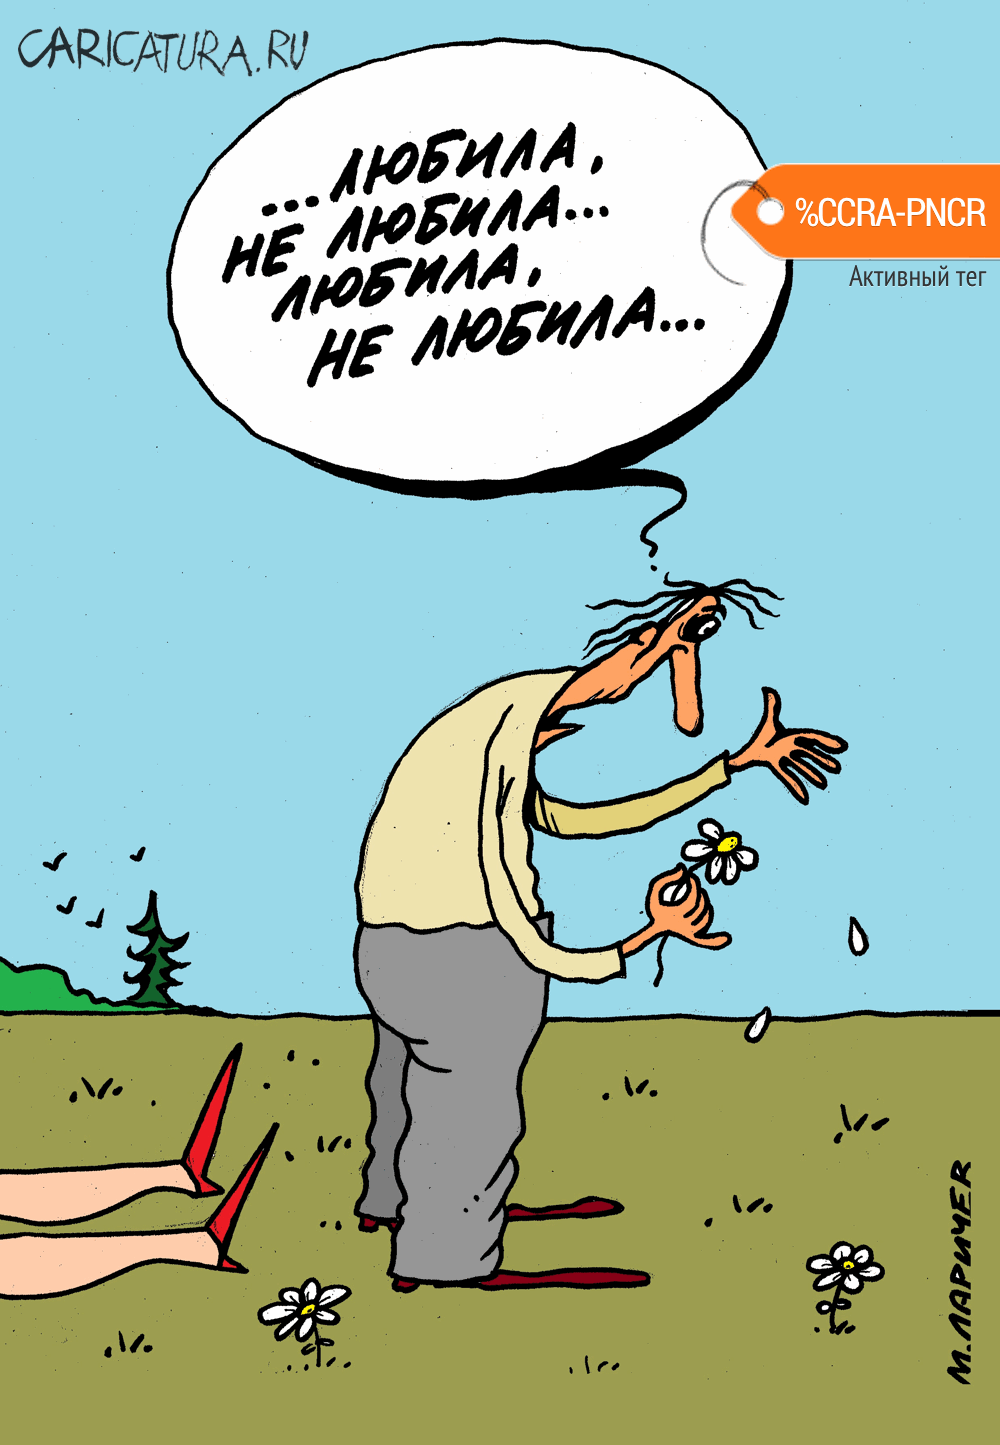 Карикатура "Послесловие", Михаил Ларичев